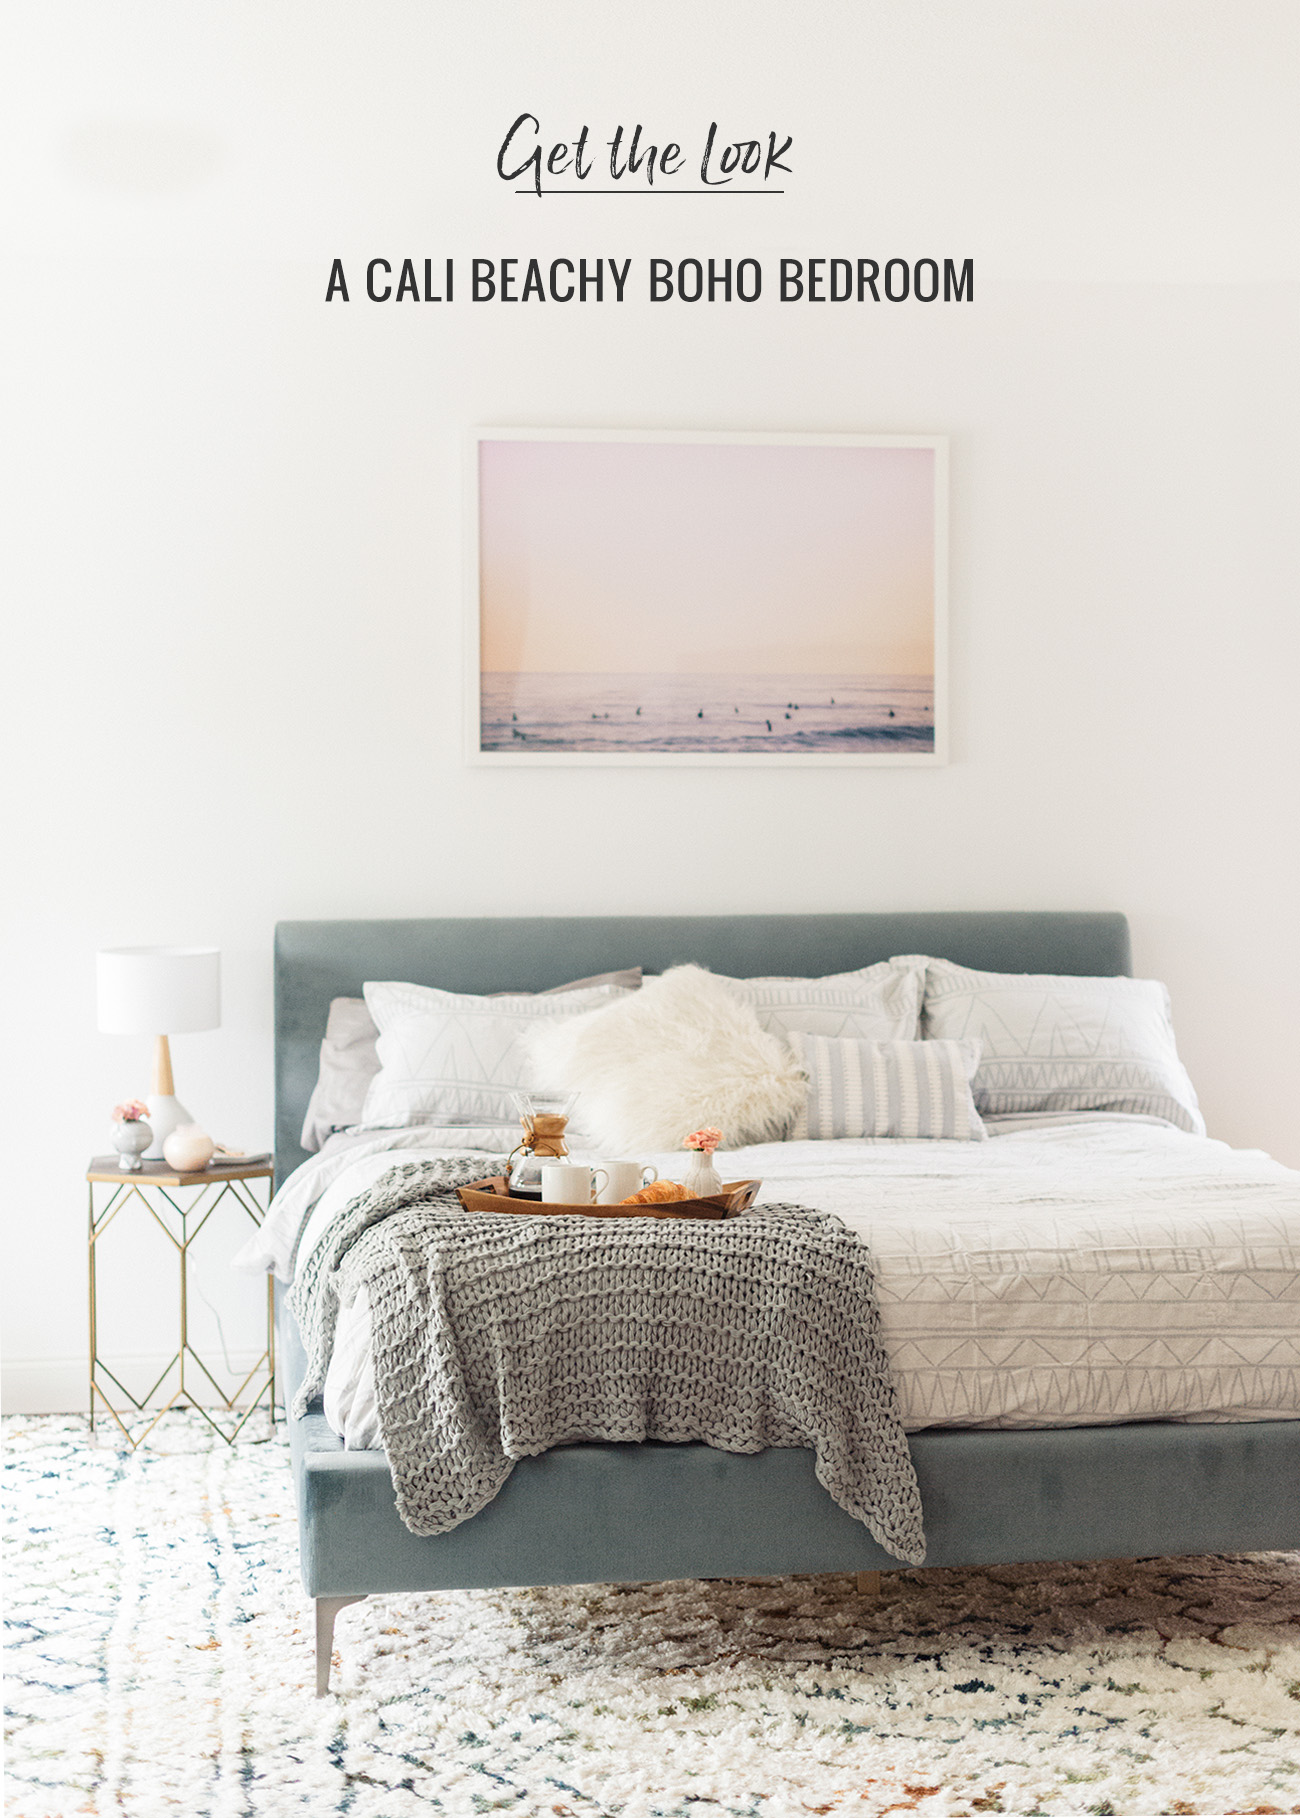 Get the Look Cali Beachy Boho Bedroom 